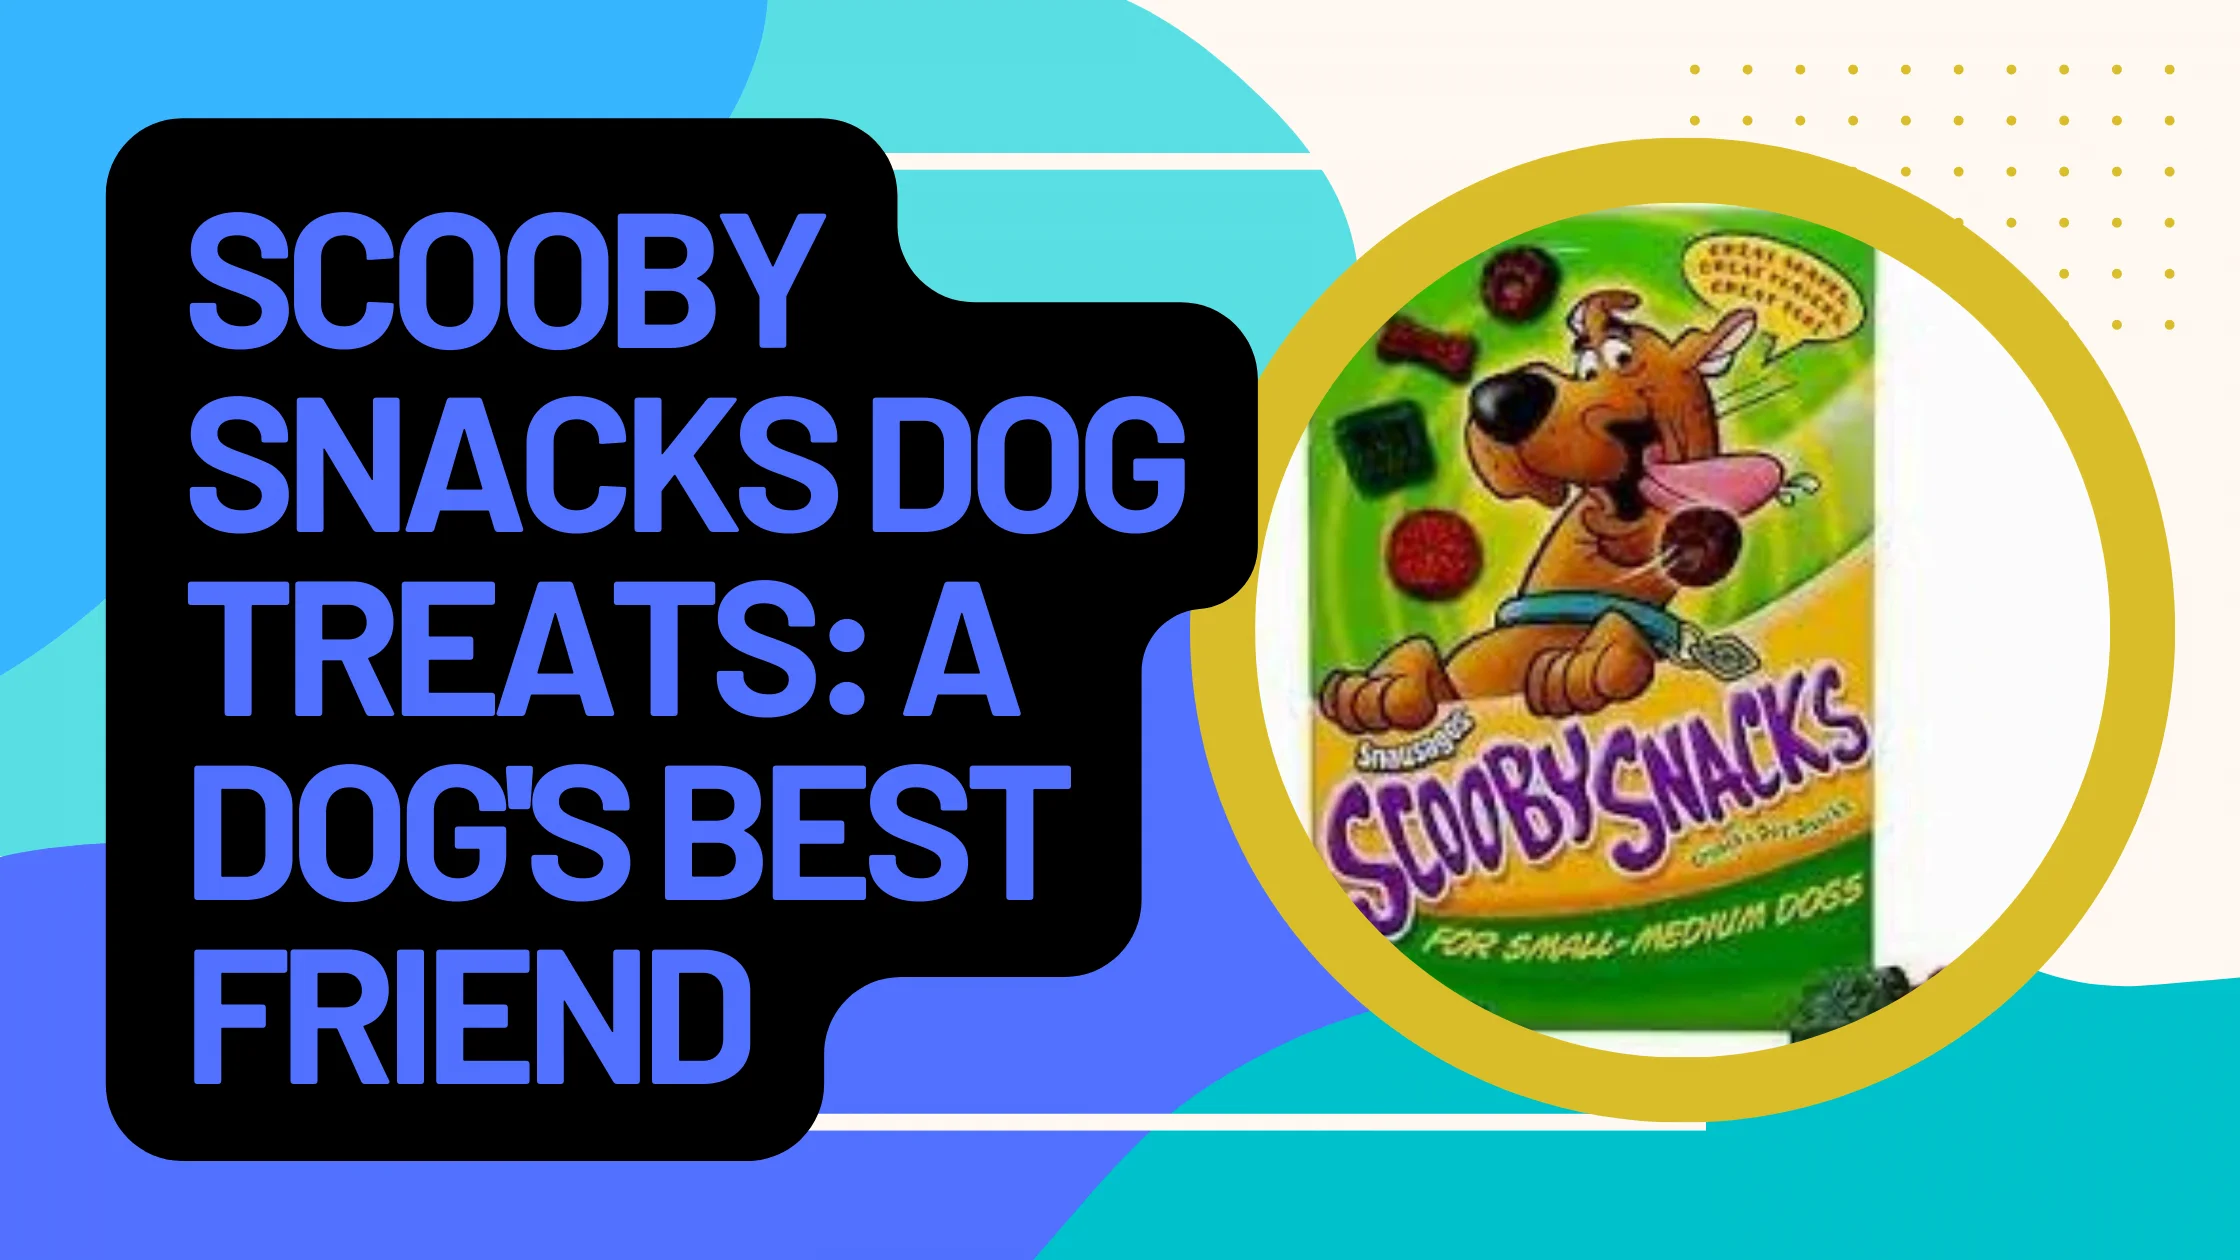 Scooby Snacks Dog Treats